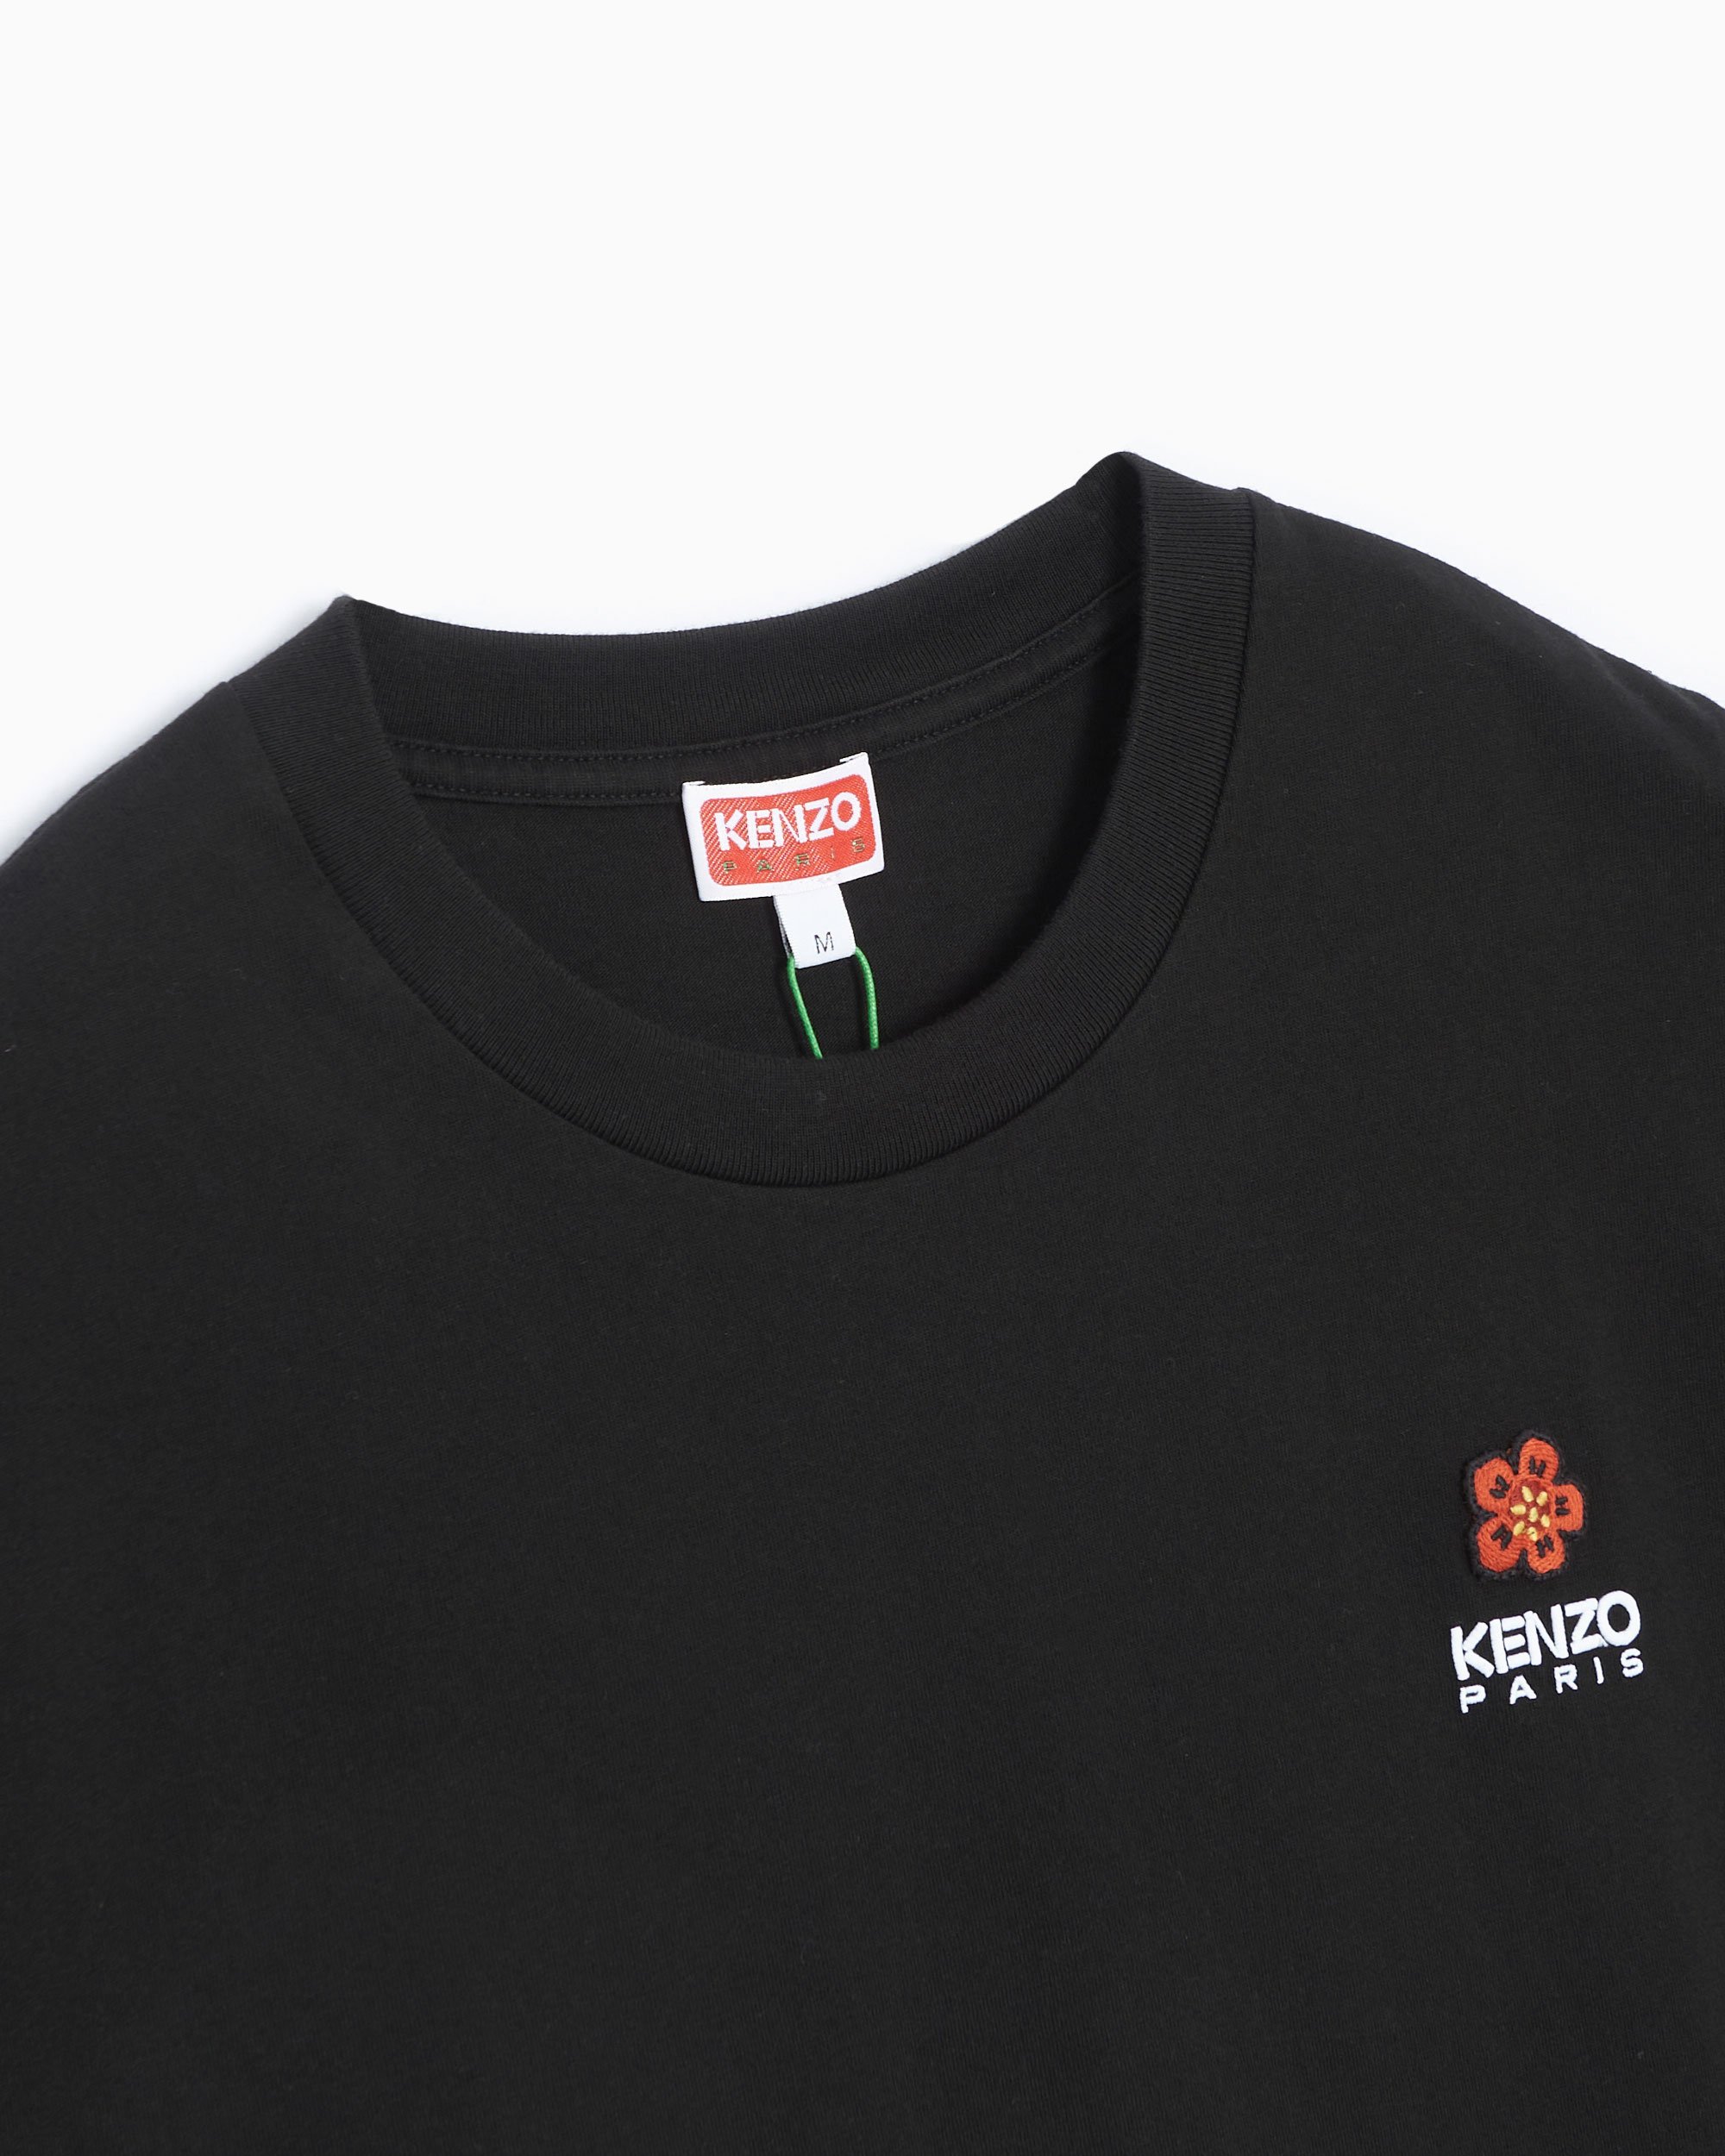 Kenzo BOKE FLOWER Crest Men's T-Shirt Black FC65TS4124SG-99J| Buy